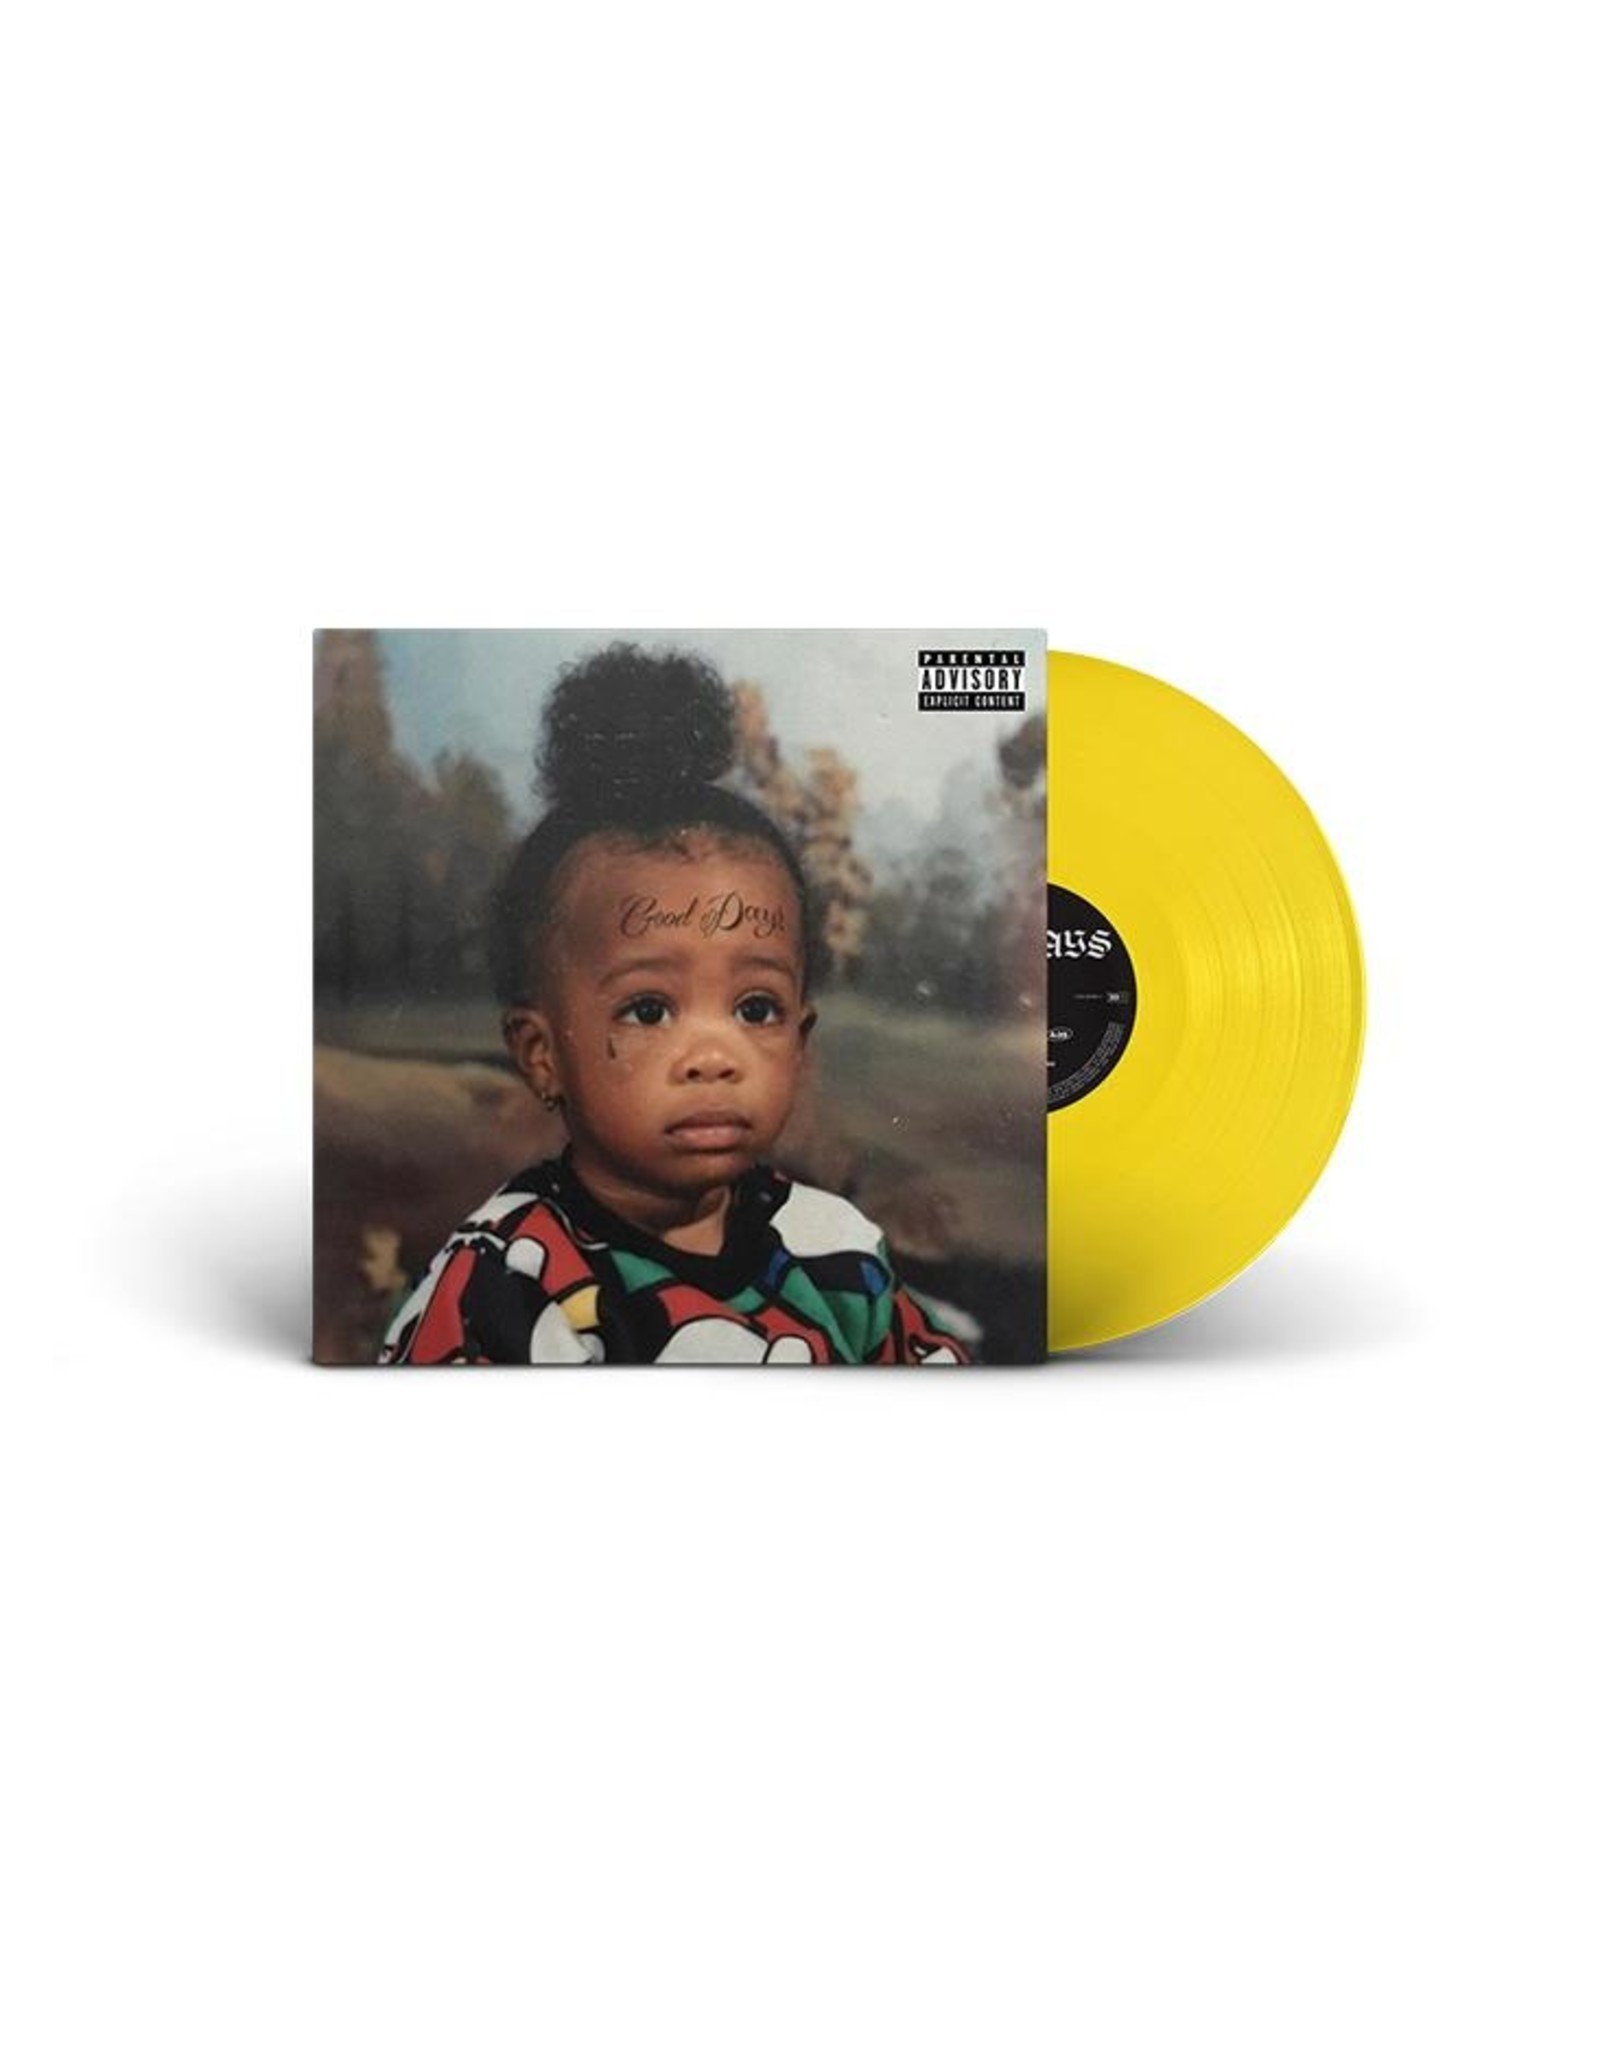 SZA - Good Days (10" Yellow Vinyl)